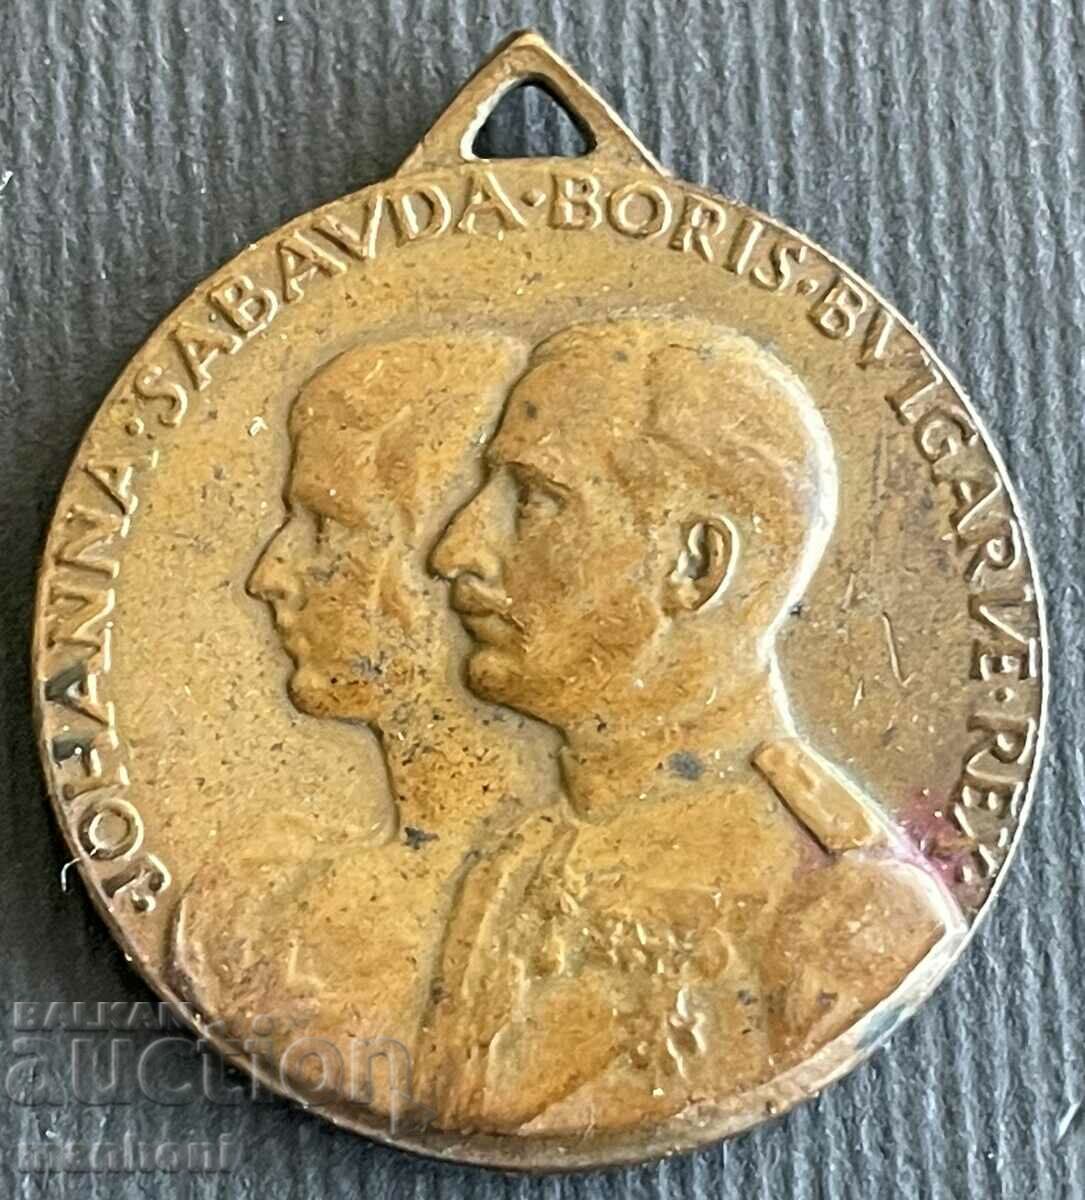 5167 Μετάλλιο του Βασιλείου της Βουλγαρίας Γάμος του Τσάρου Μπόρις και της Τσαρίτσας Ιωάννα